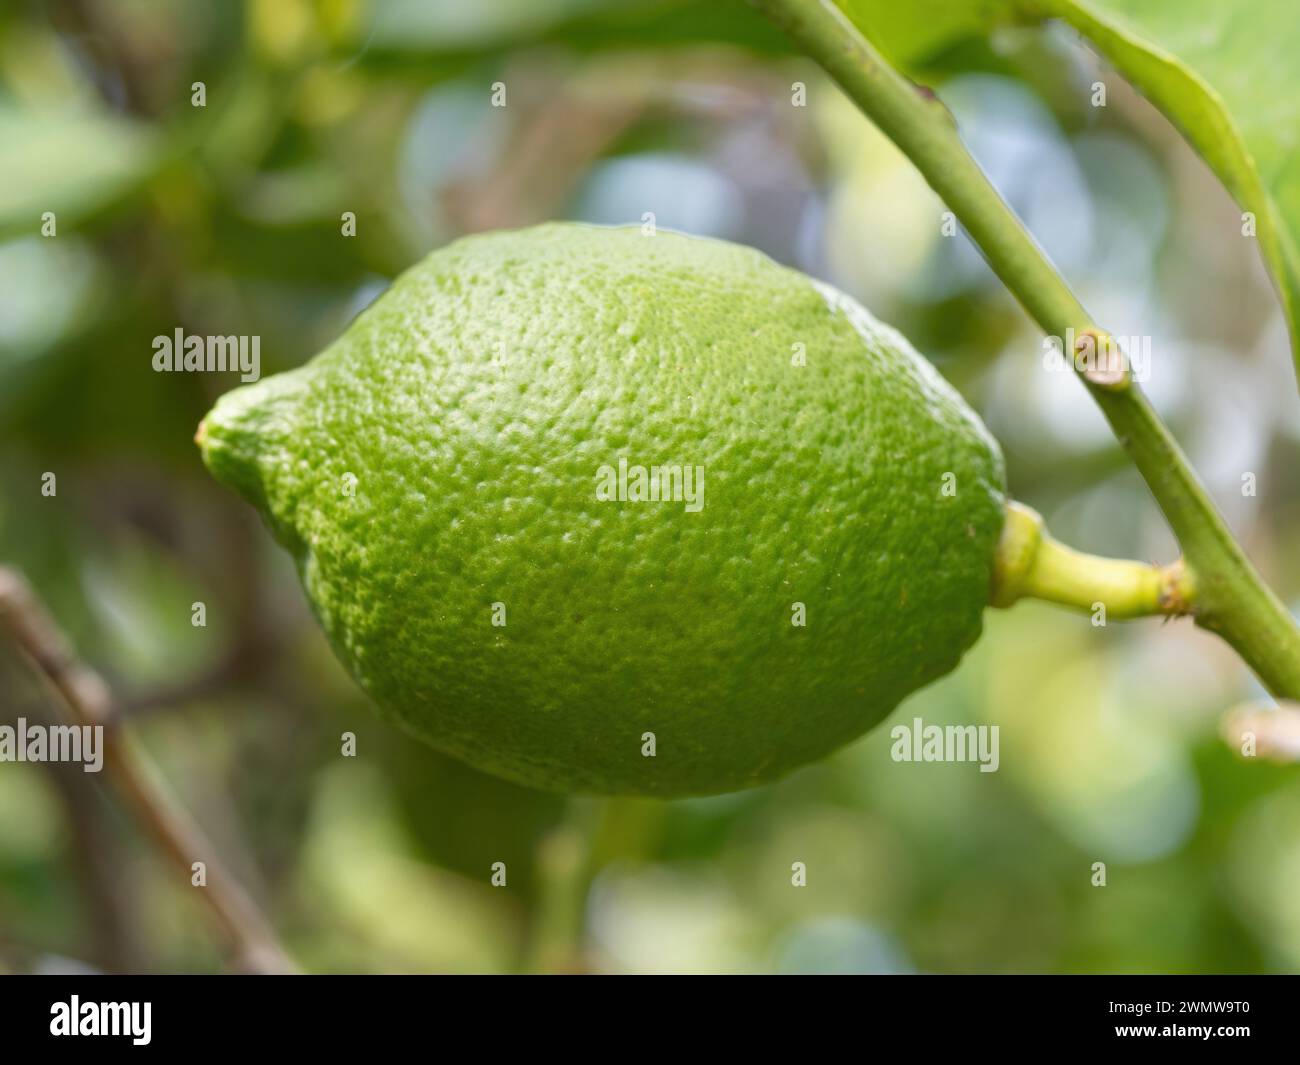 Grüne reife Limettenfrüchte (Citrus aurantifolia) wachsen auf Baumzweigen. Frisches Haufen von natürlichen Früchten, die im hausgemachten Garten wachsen. Nahaufnahme. Ökologischer Landbau, Stockfoto